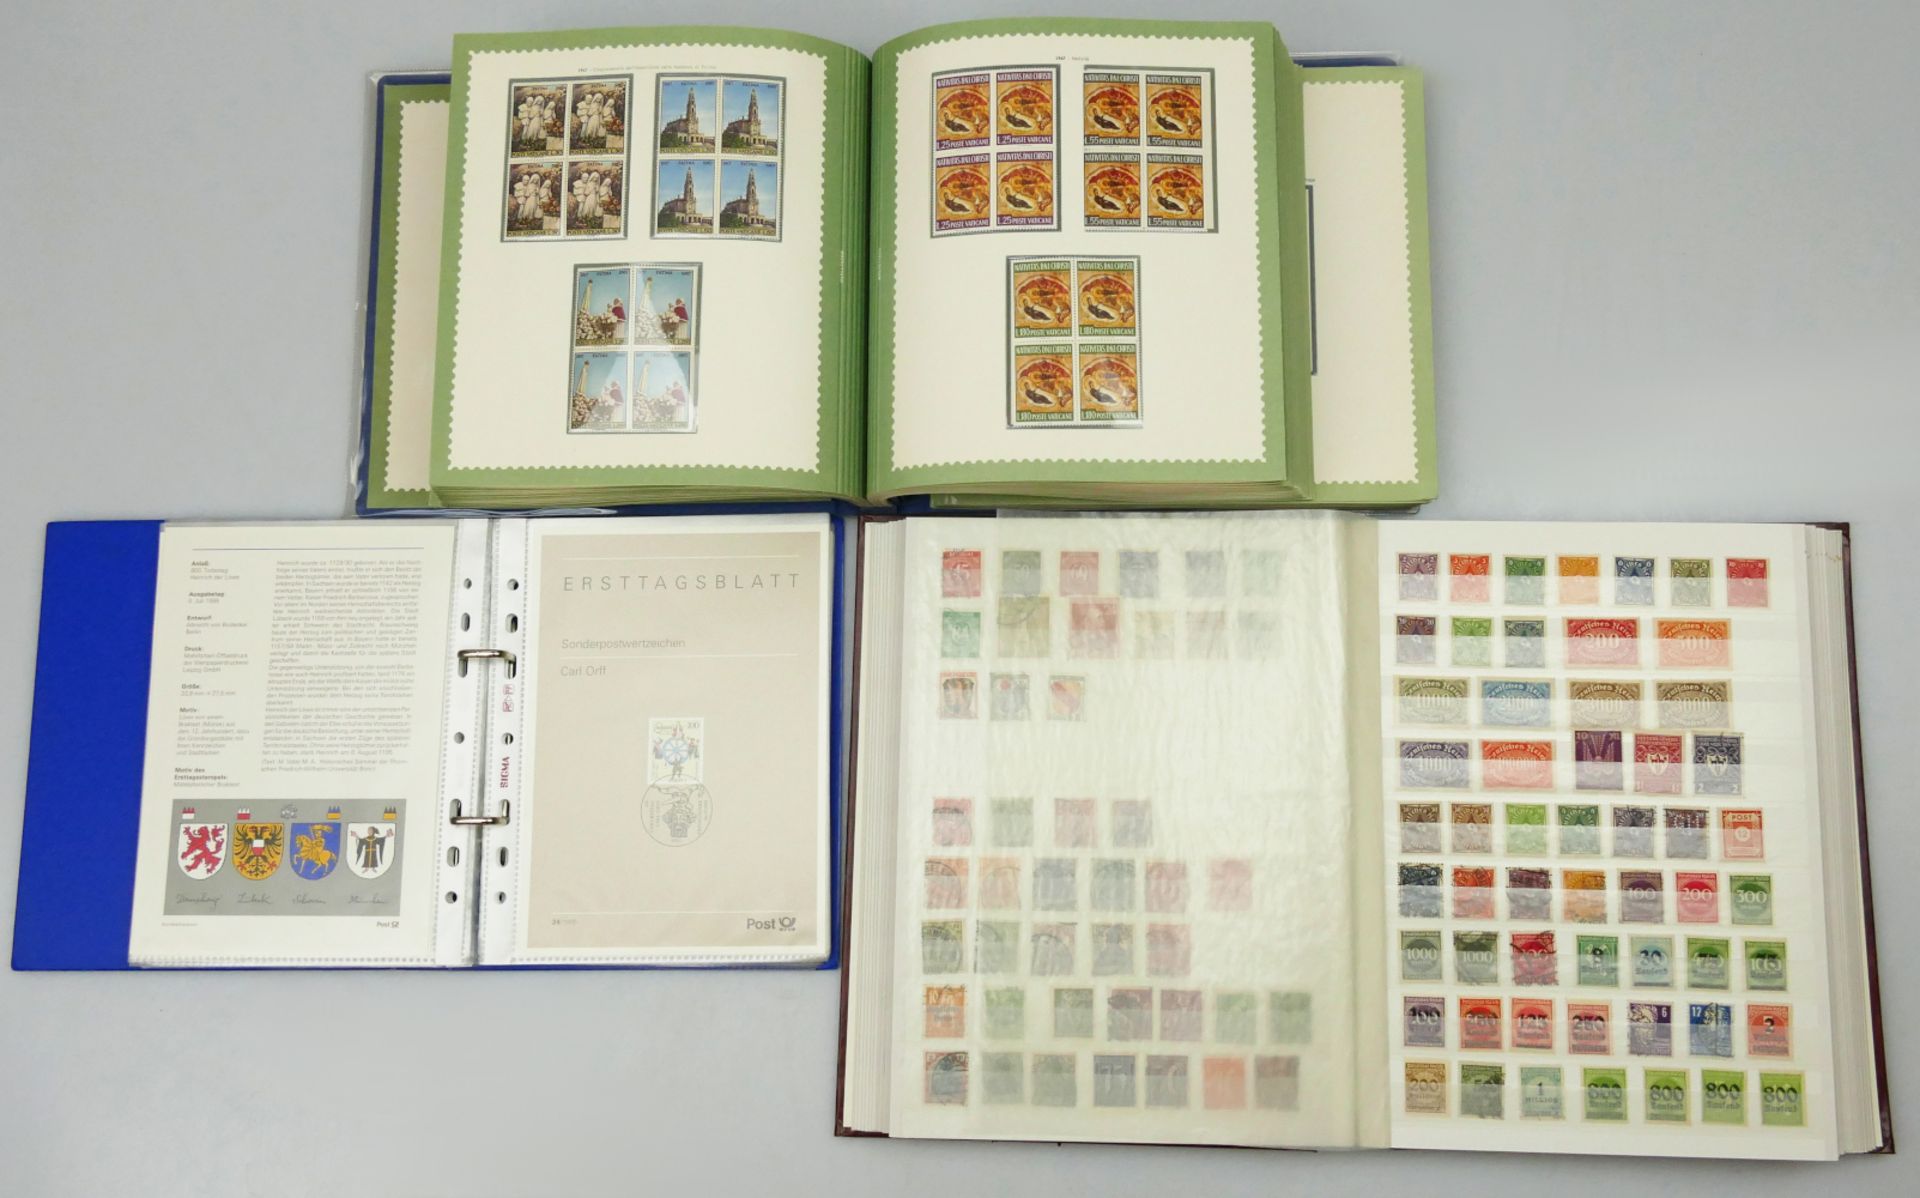 26 Ordner/Alben mit Briefmarken: BRD, Vatikan, 1 Album mit Bayern/Deutsches Reich v.a. Doubletten, 